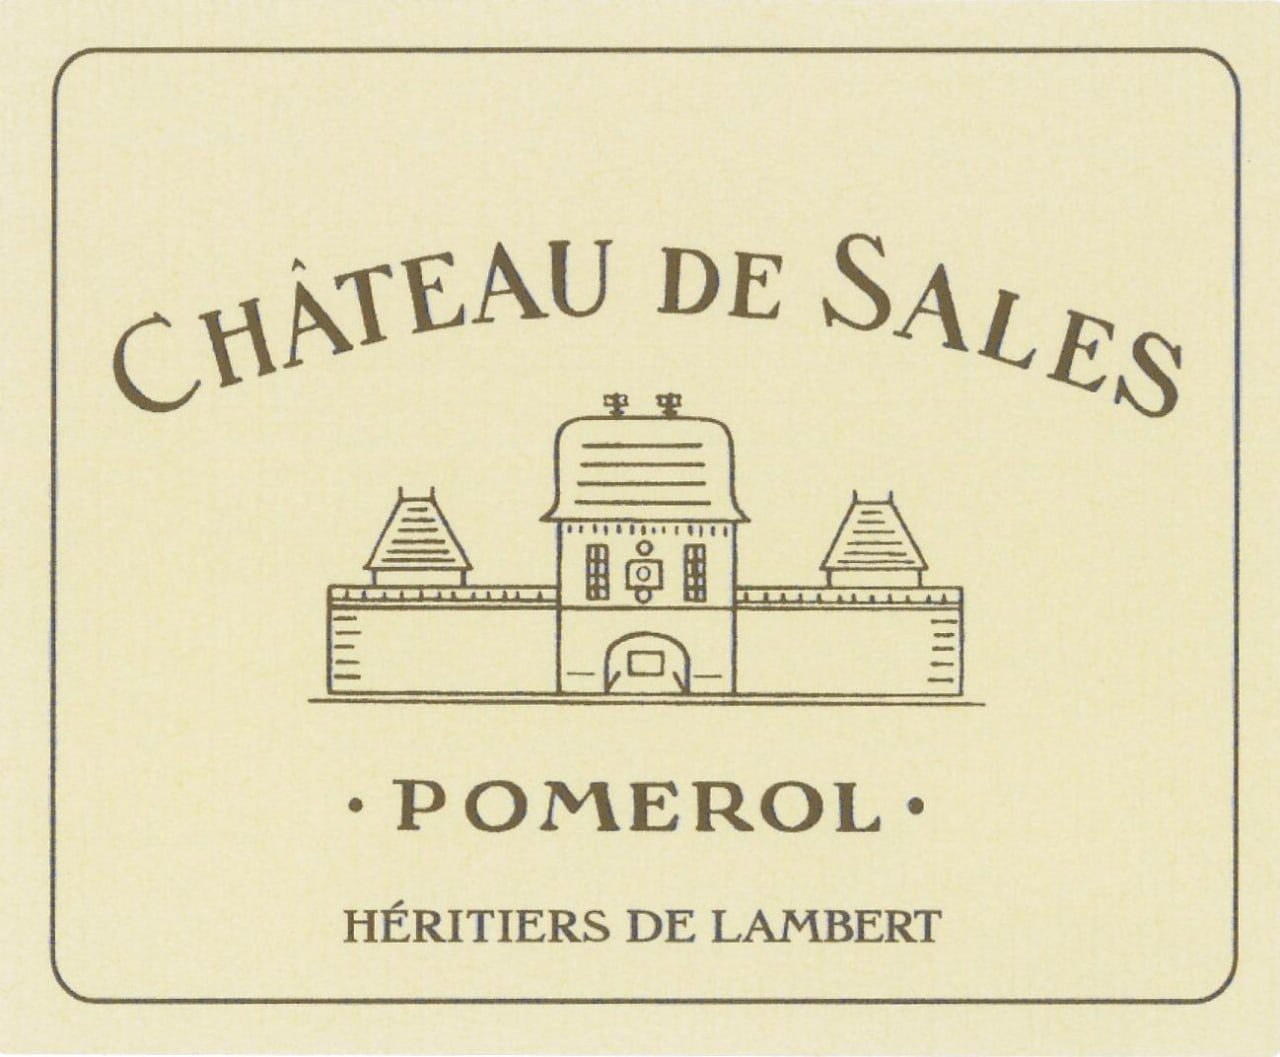 Chateau de Sales Pomerol